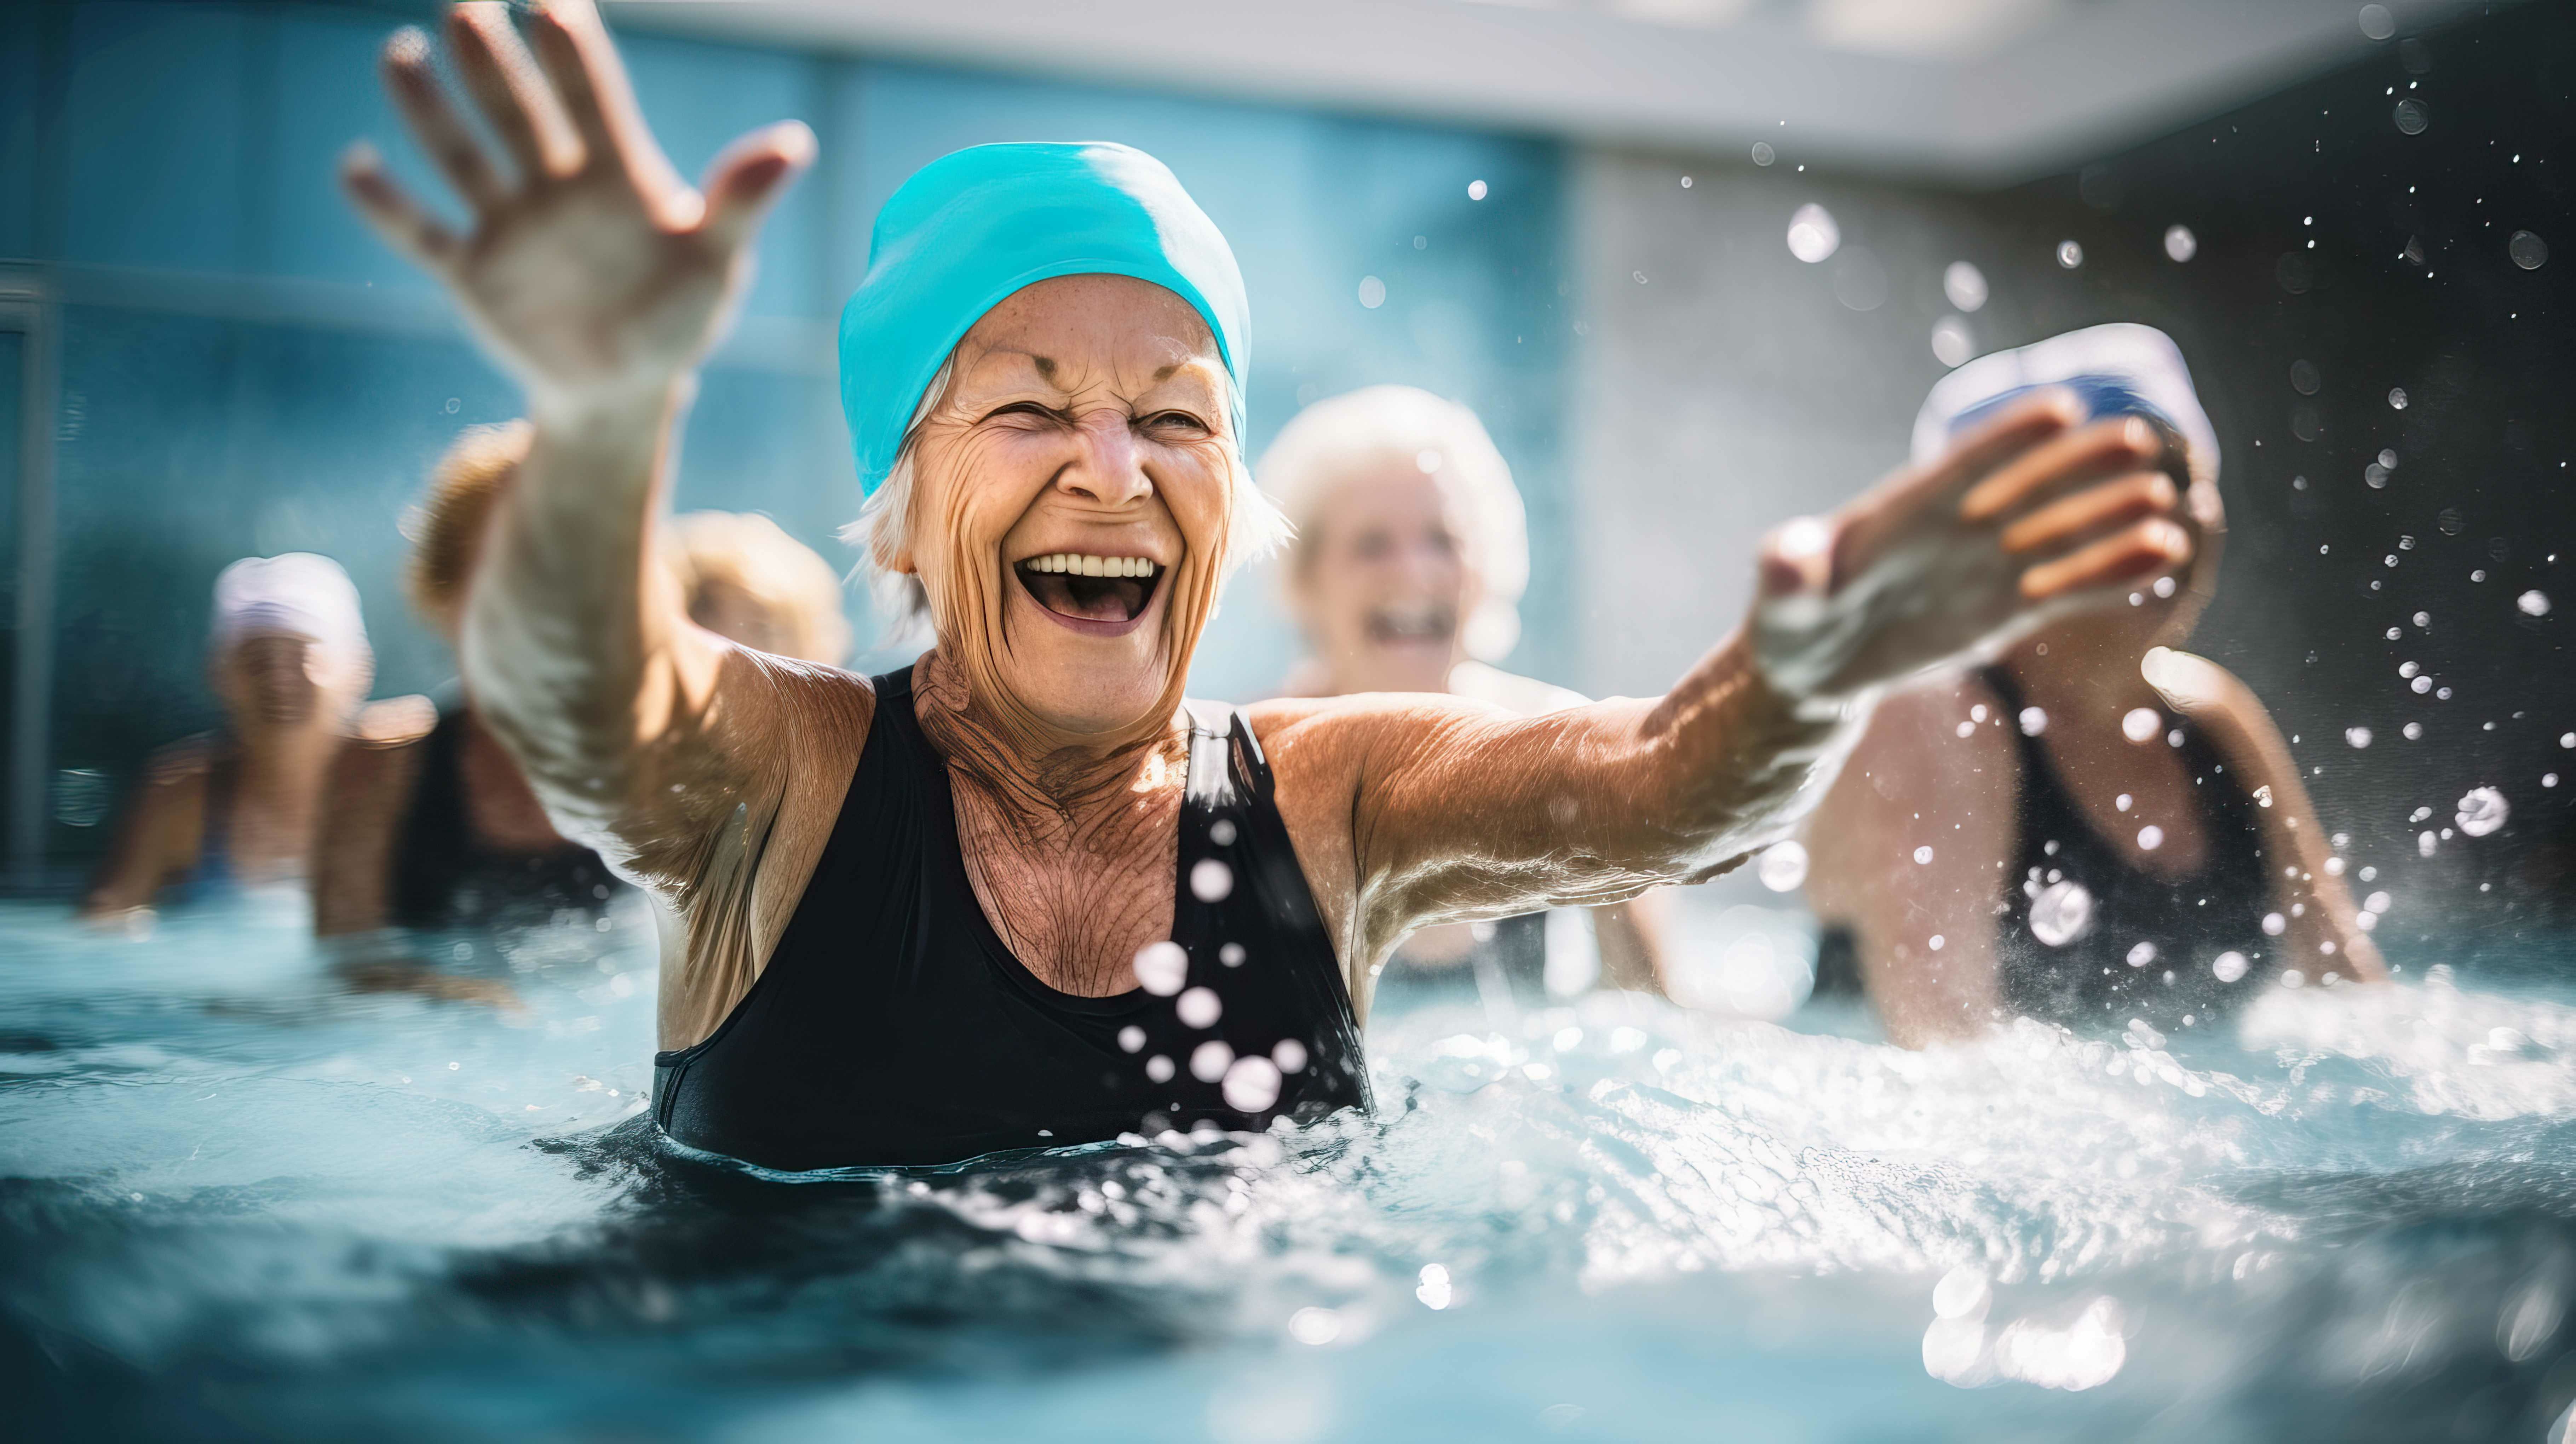 Pratiquer une forme intense d’aquagym ou HIIT dans l'eau permet l’amélioration de la capacité d’exercice, de la mobilité et de la qualité de vie (Visuel Adobe Stock 644998712).